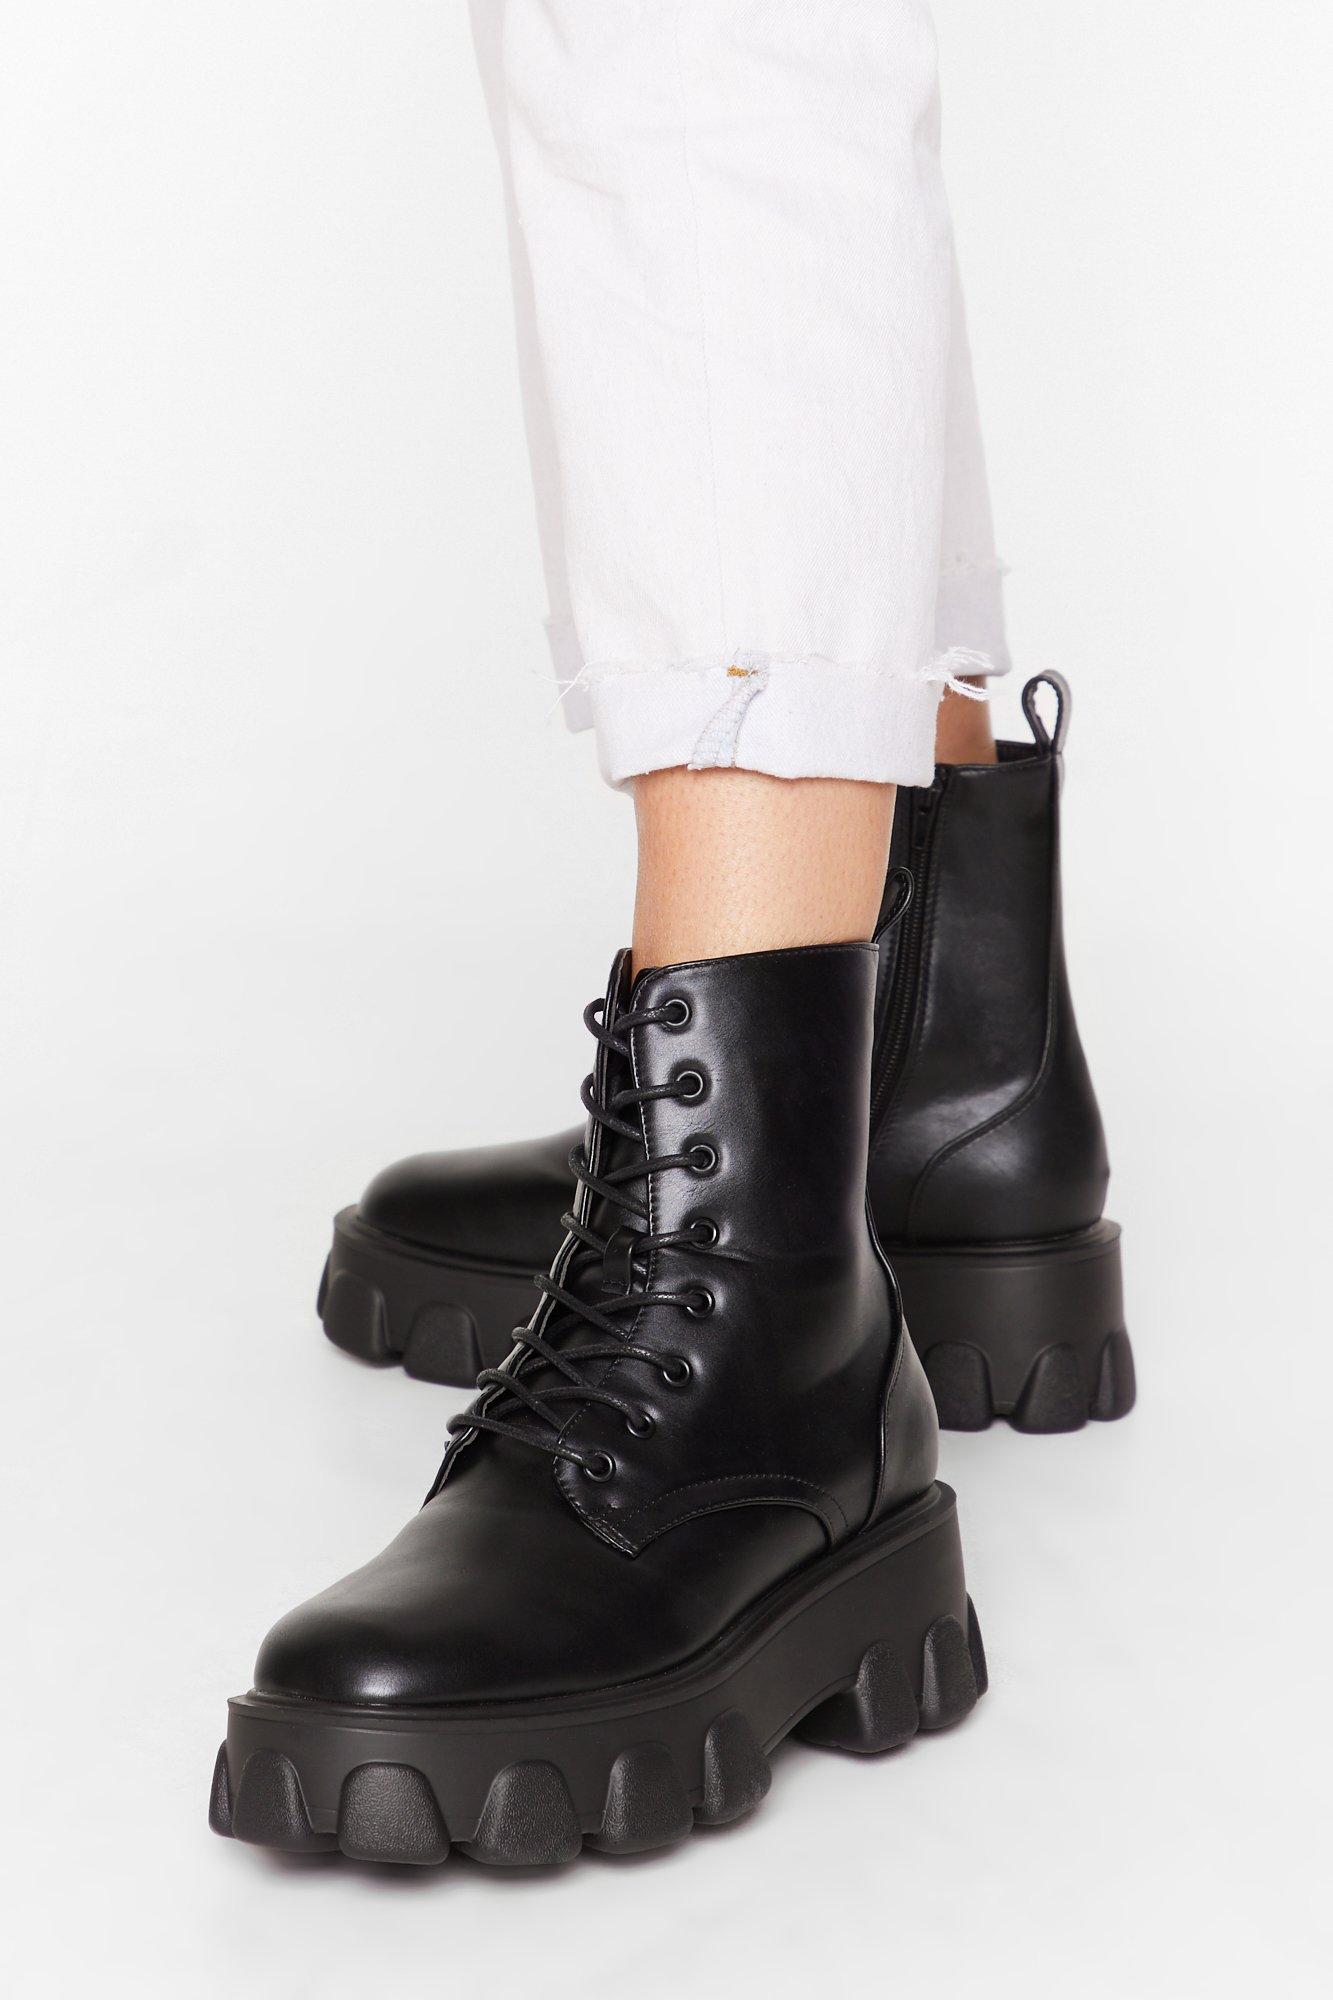 black leather boots platform